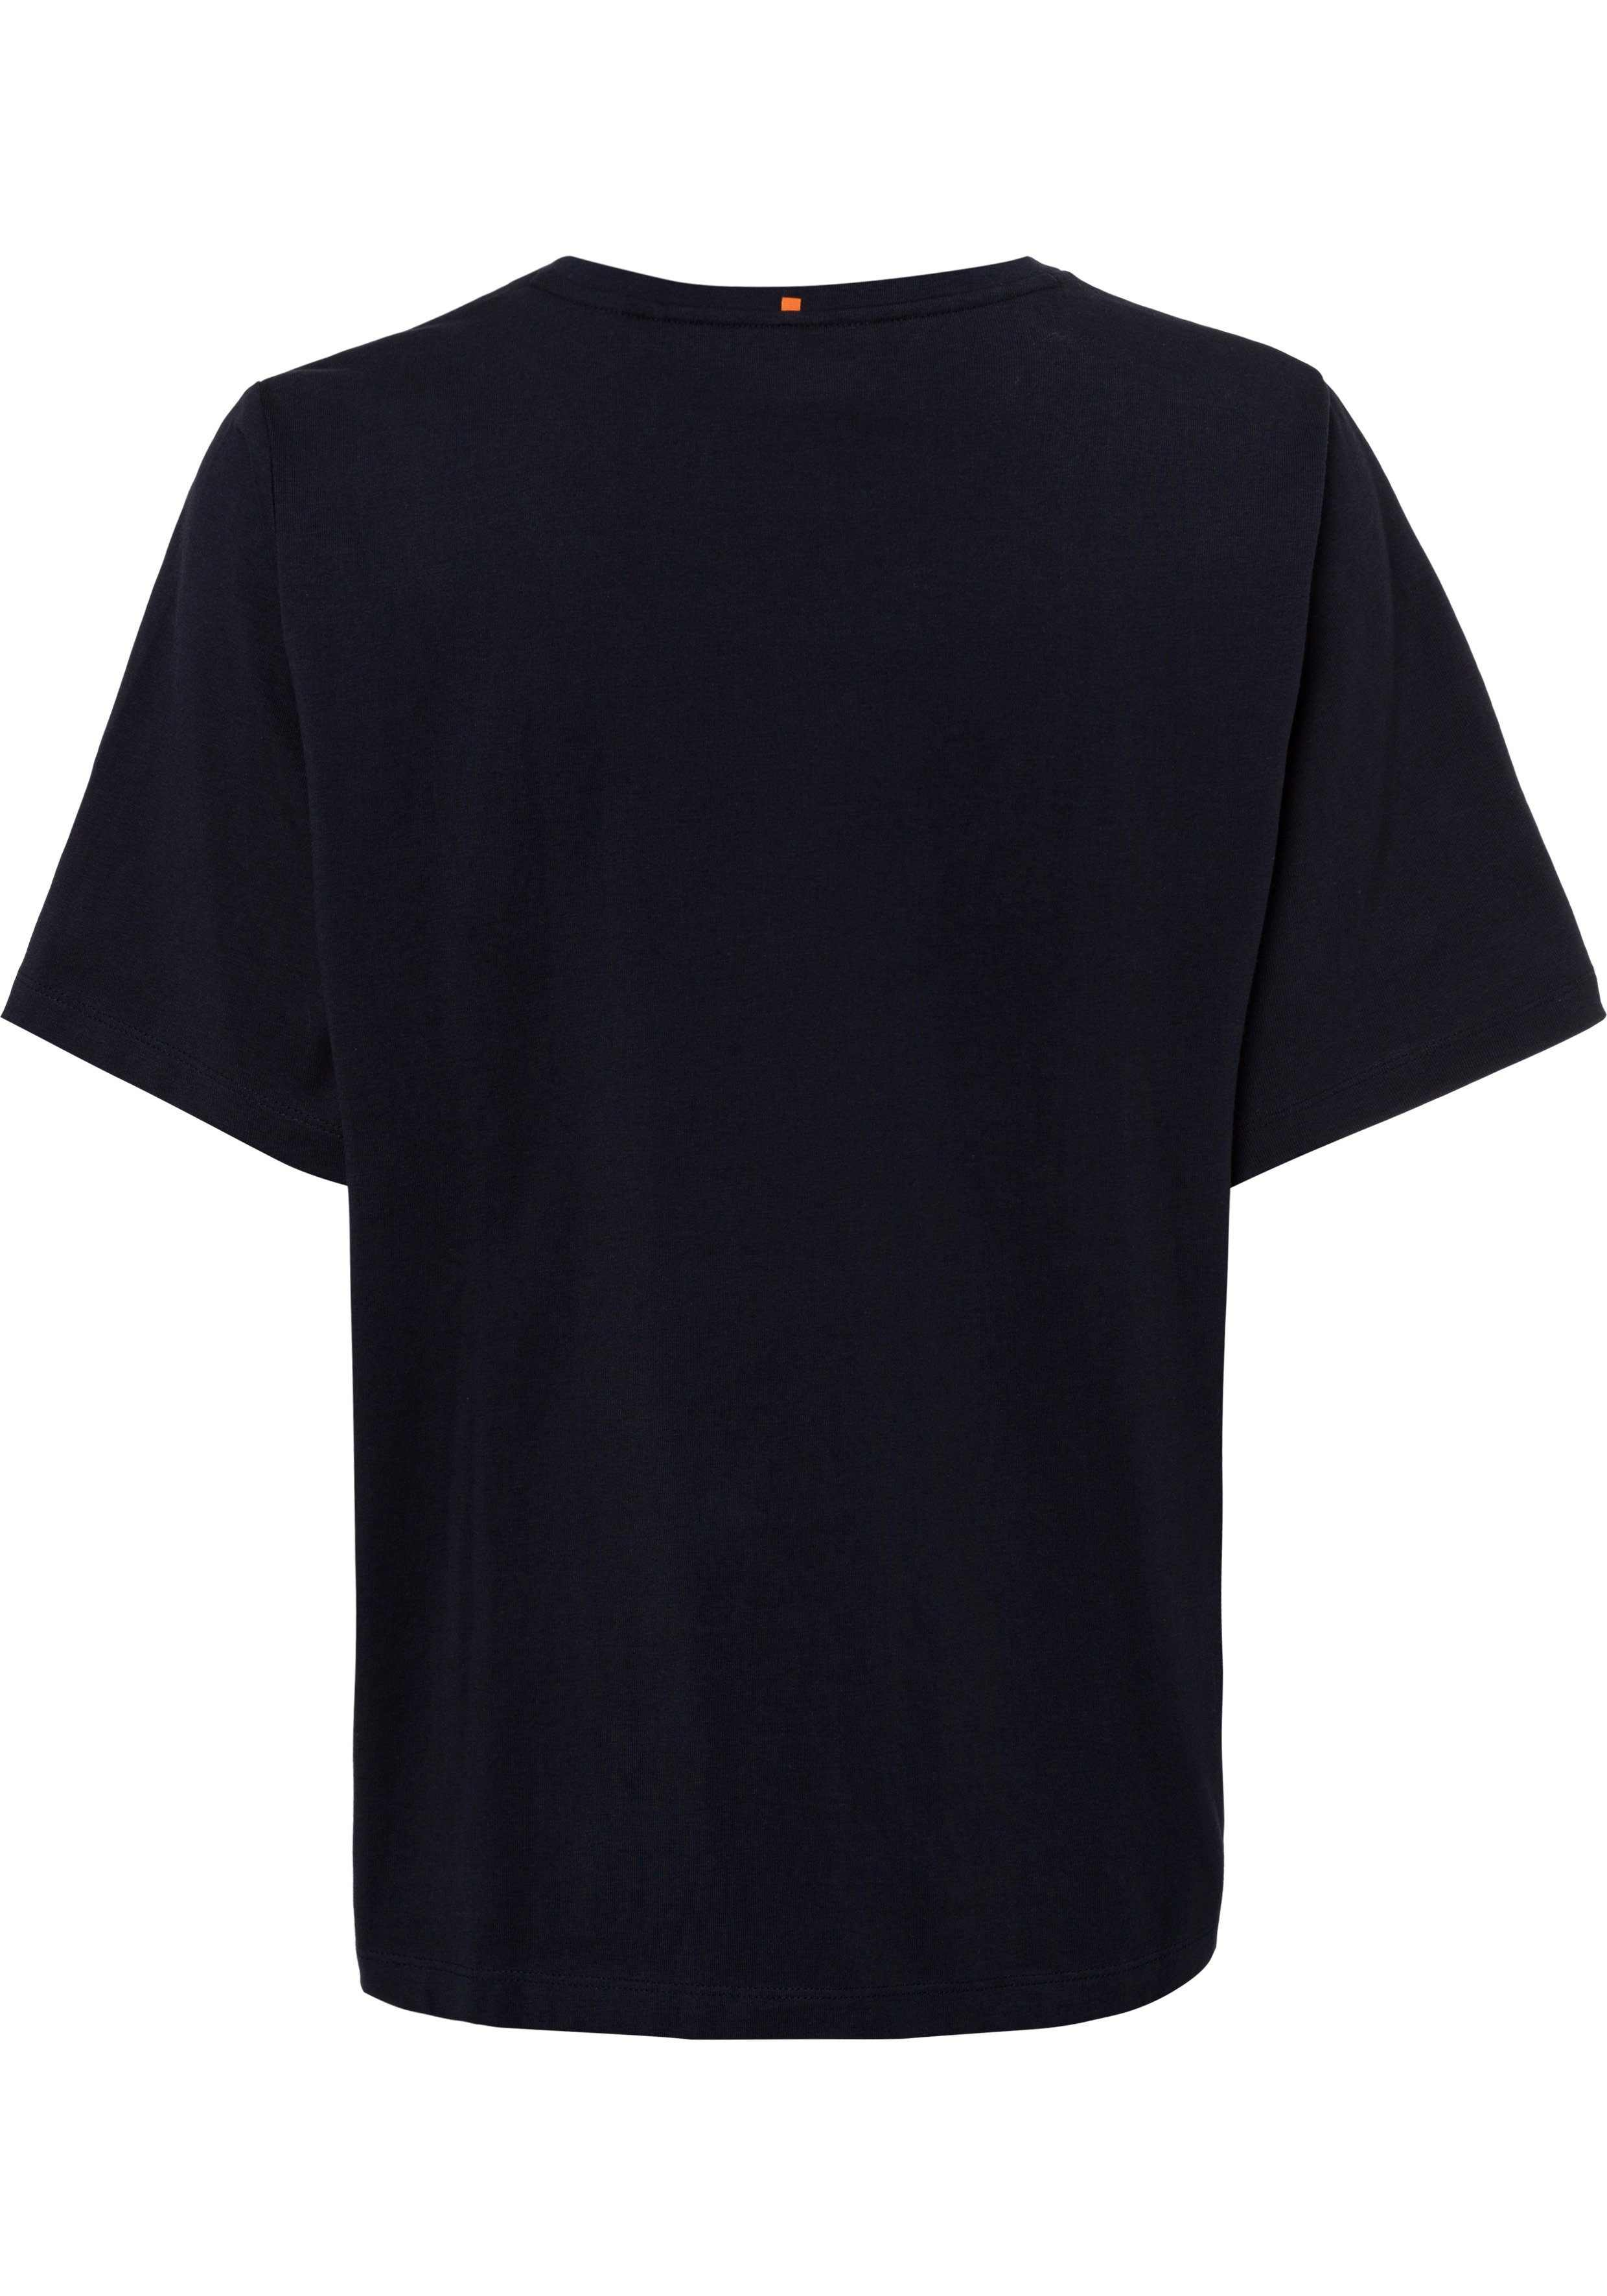 BOSS-Kontrastband innen navy am ORANGE T-Shirt mit Ausschnitt BOSS